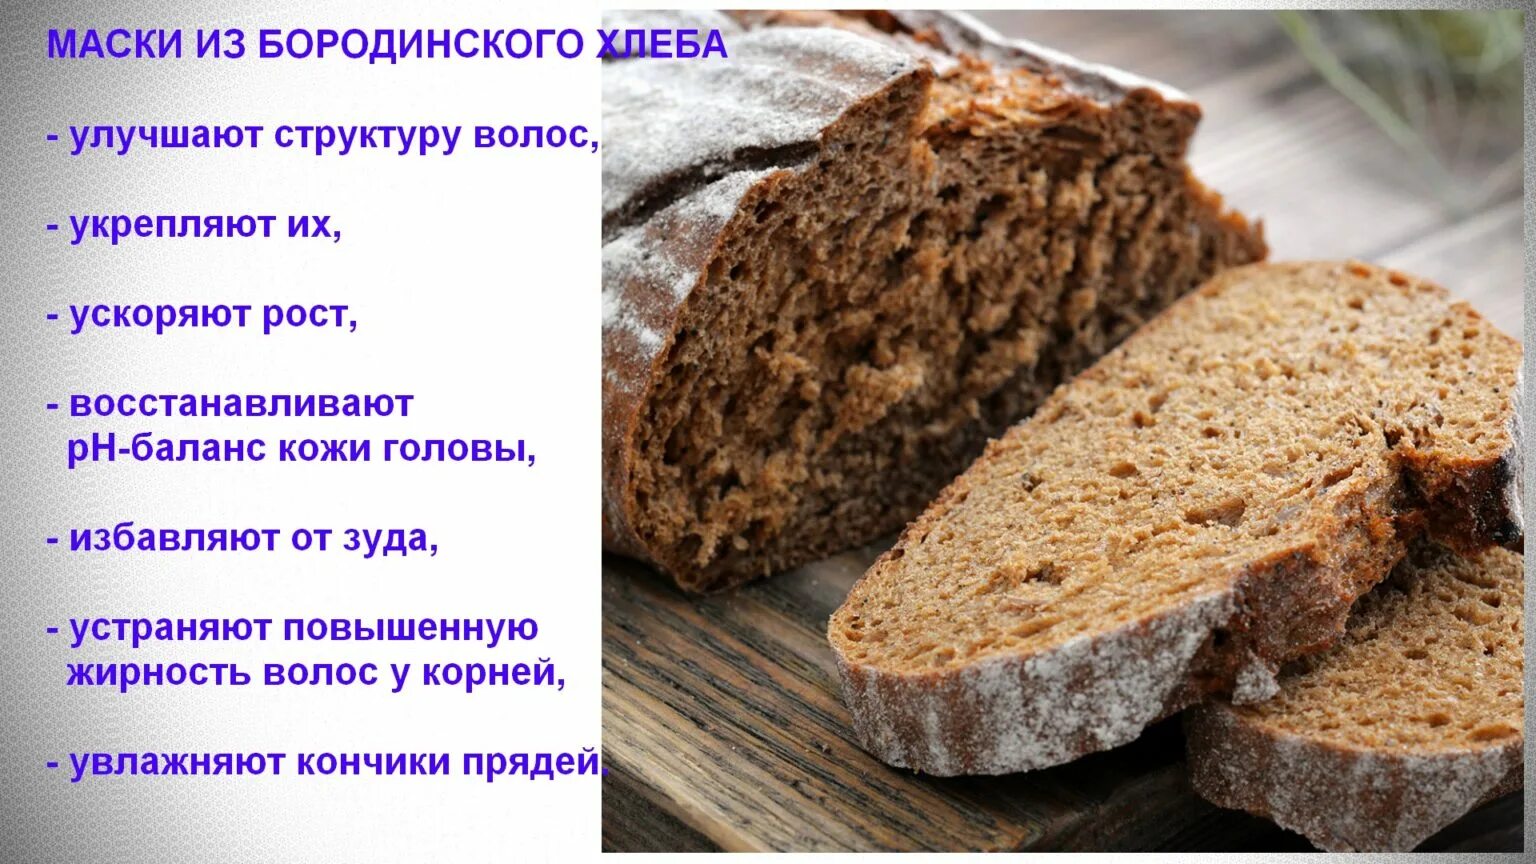 Ржаной хлеб. Ржаной хлеб Бородинский. Черный хлеб состав. Рецептура ржаного хлеба Бородинского. Можно кормить черным хлебом